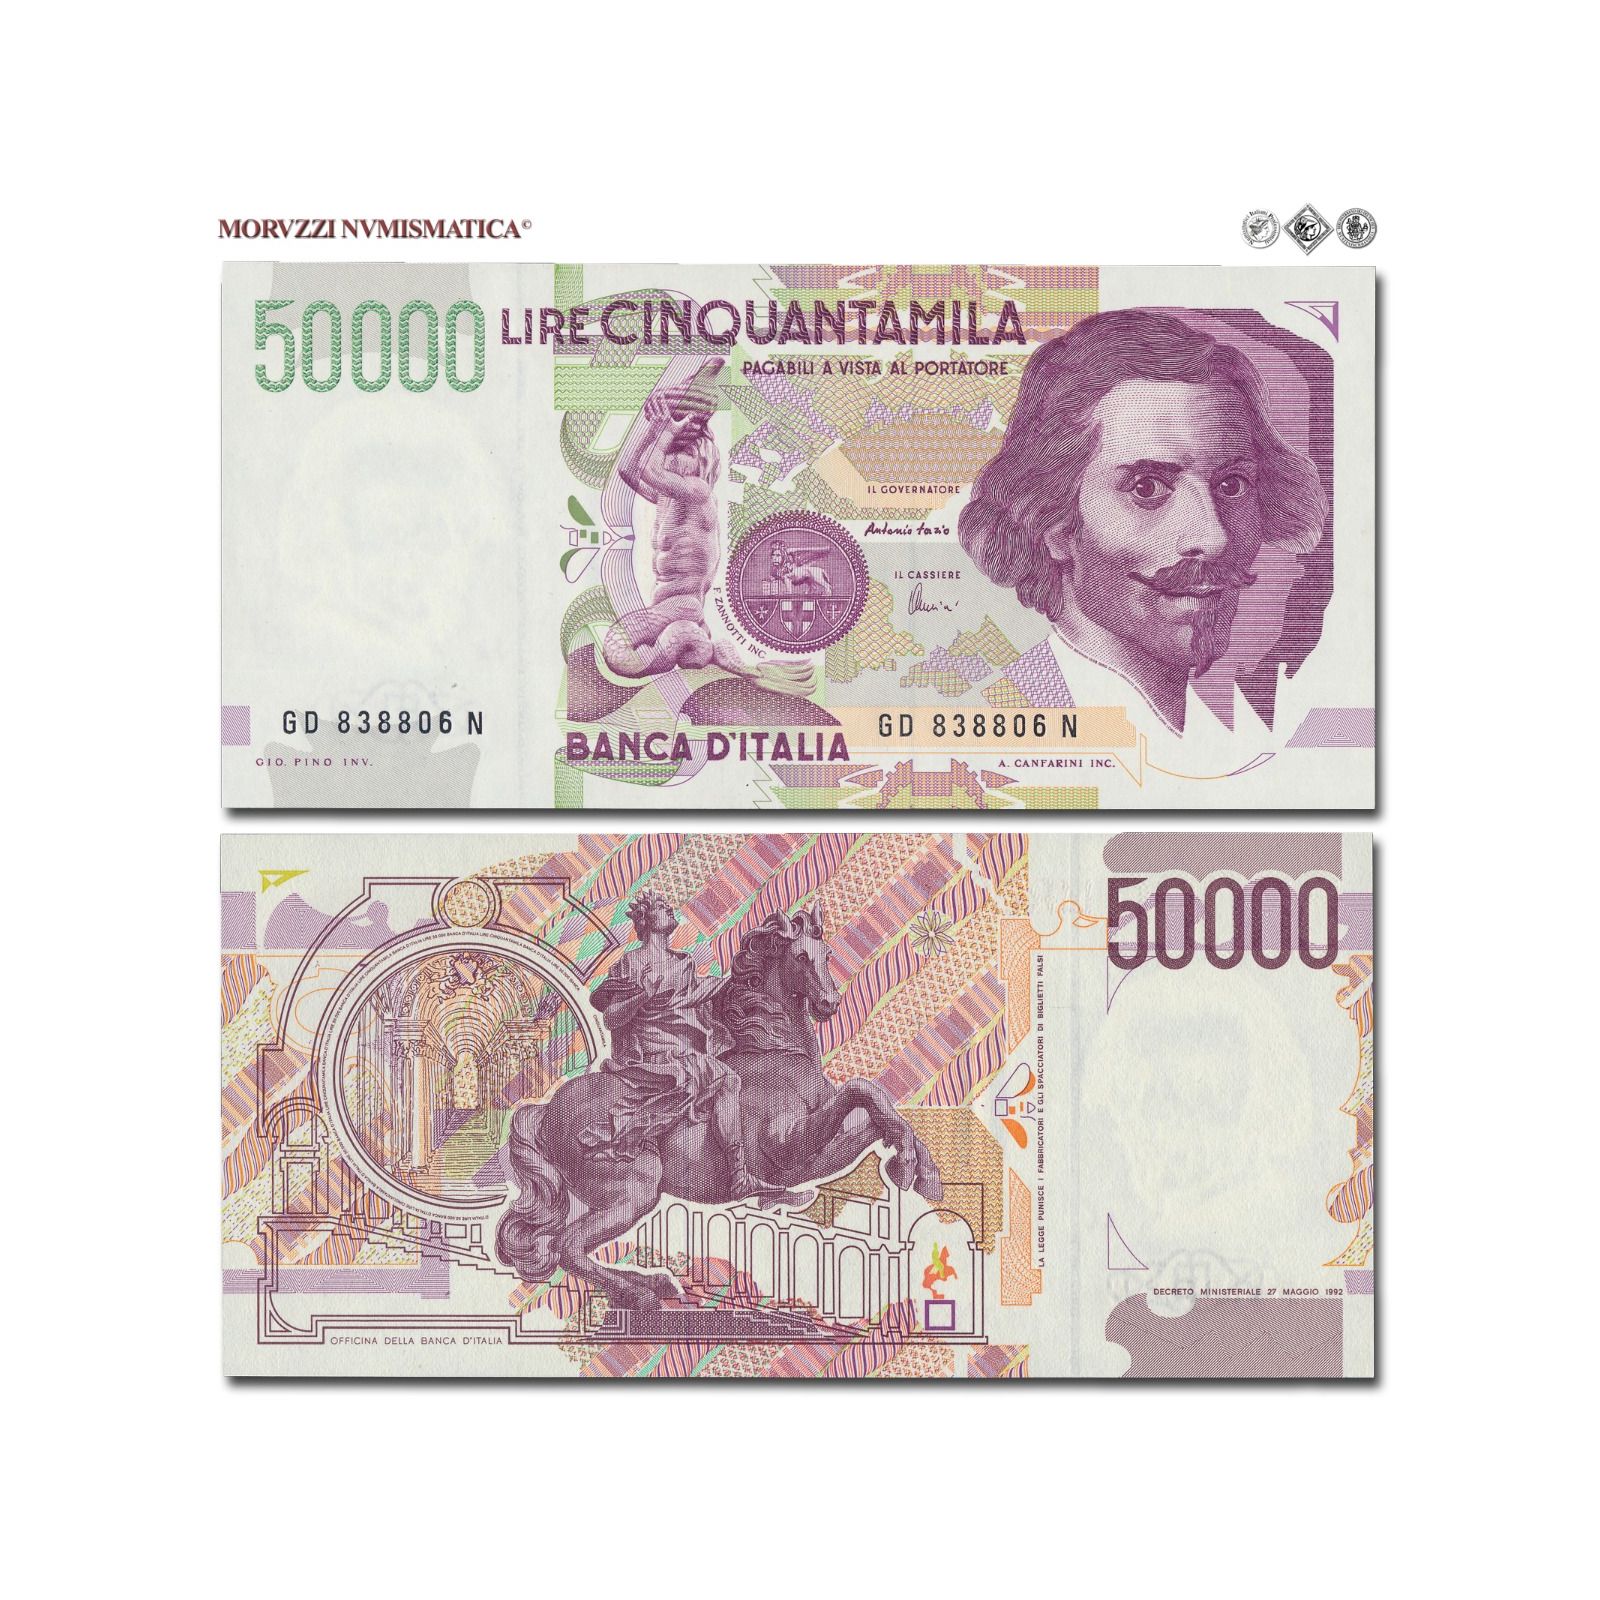 50000 lire - BANCONOTA DA 50.000 LIRE ITALIA BERNINI 1° TIPO SERIE